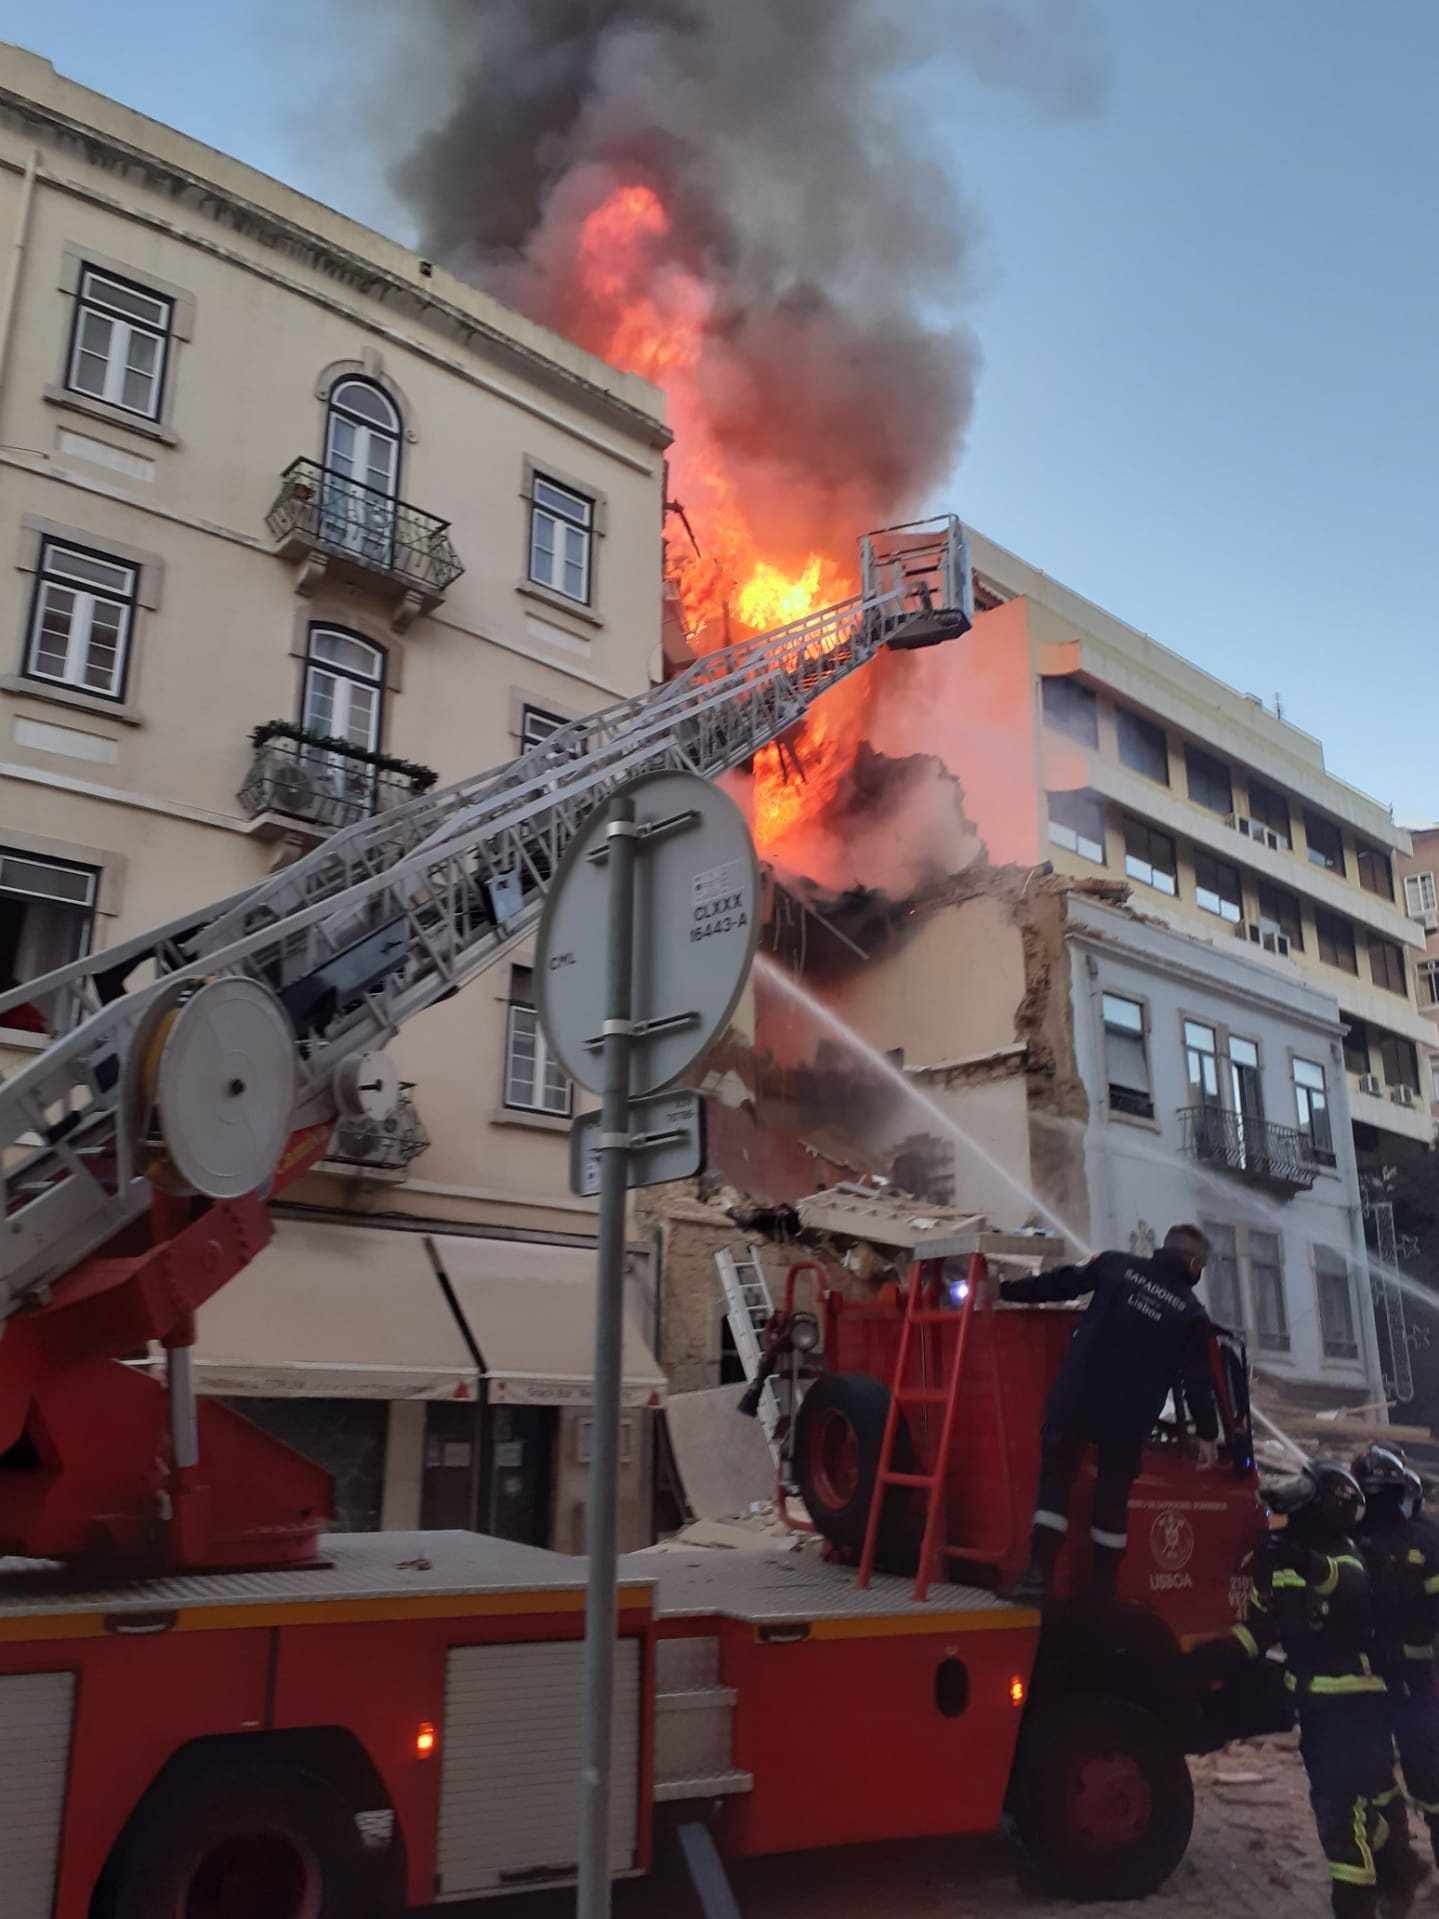 Para o local foram mobilizados meios dos bombeiros de Algueirão e de São Pedro de Sintra